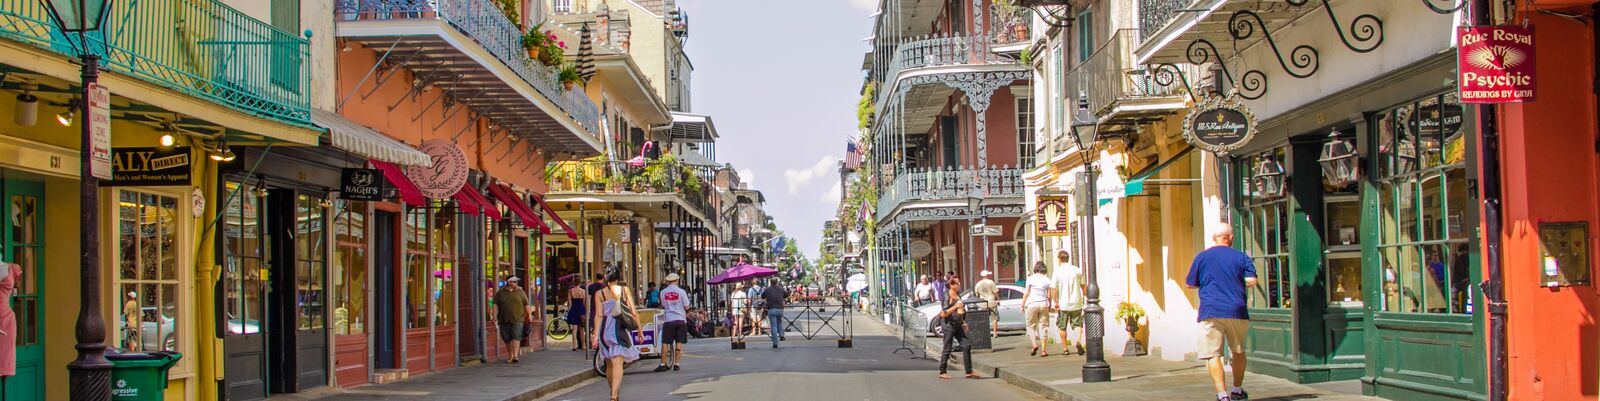 Farbenprächtige Häuser in New Orleans